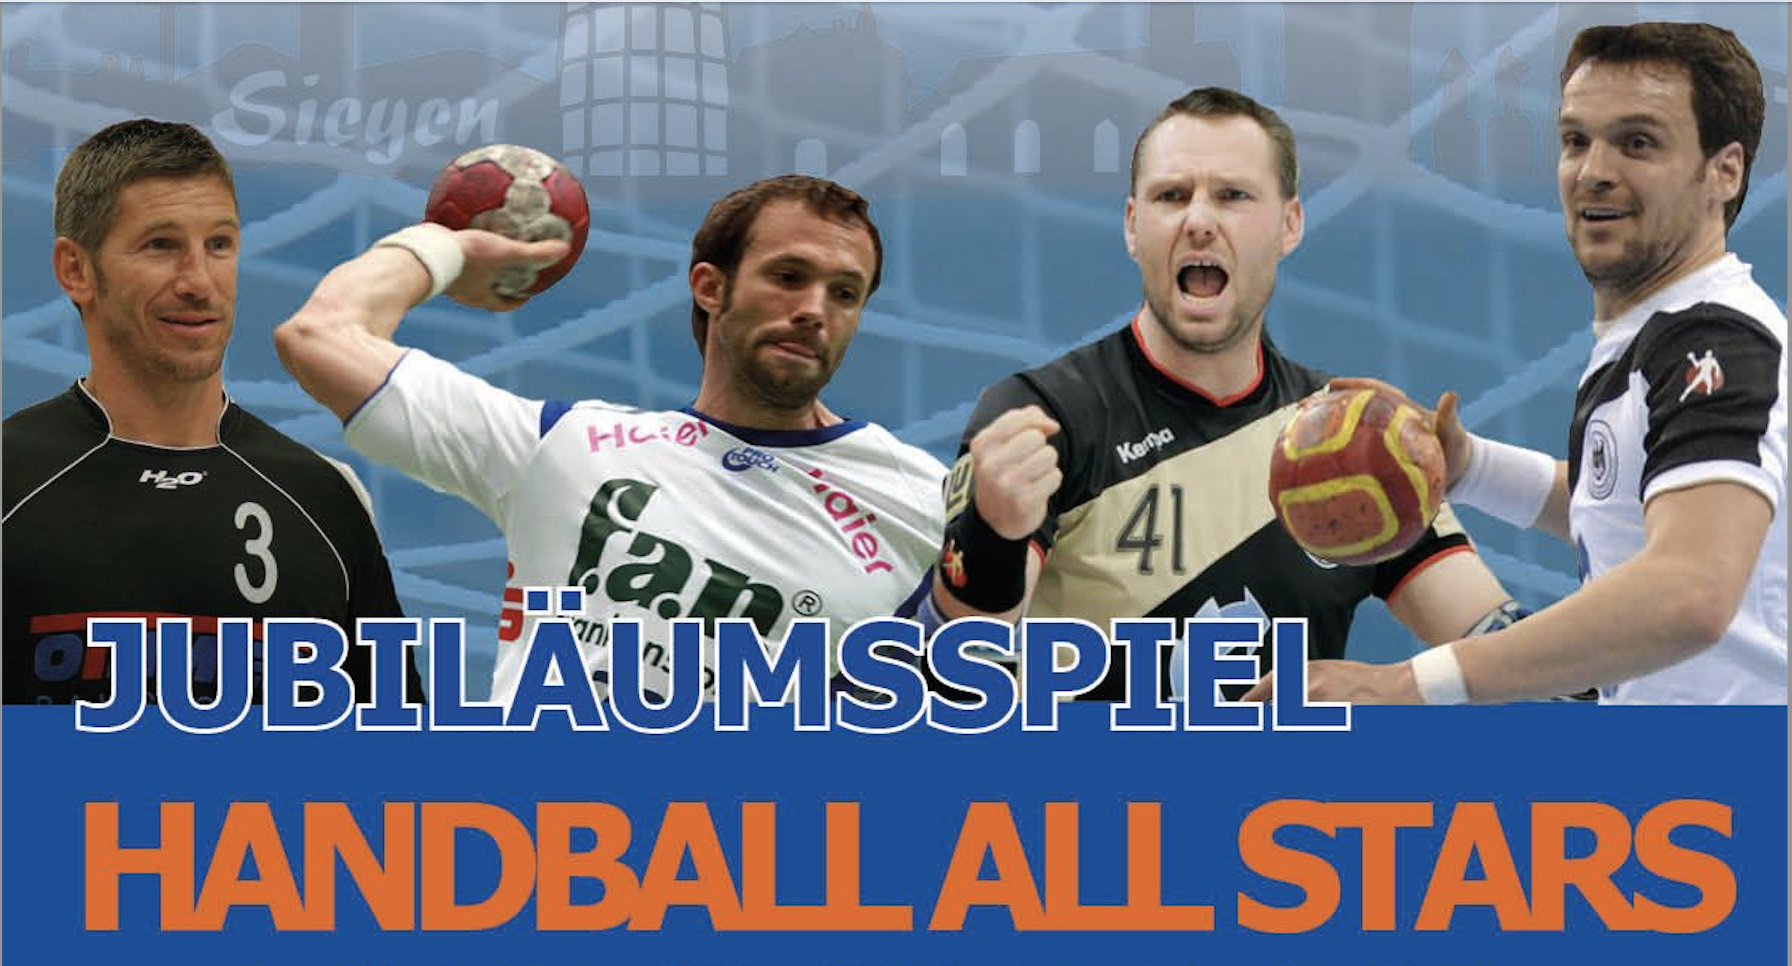 Handball All Stars kommen nach Siegen